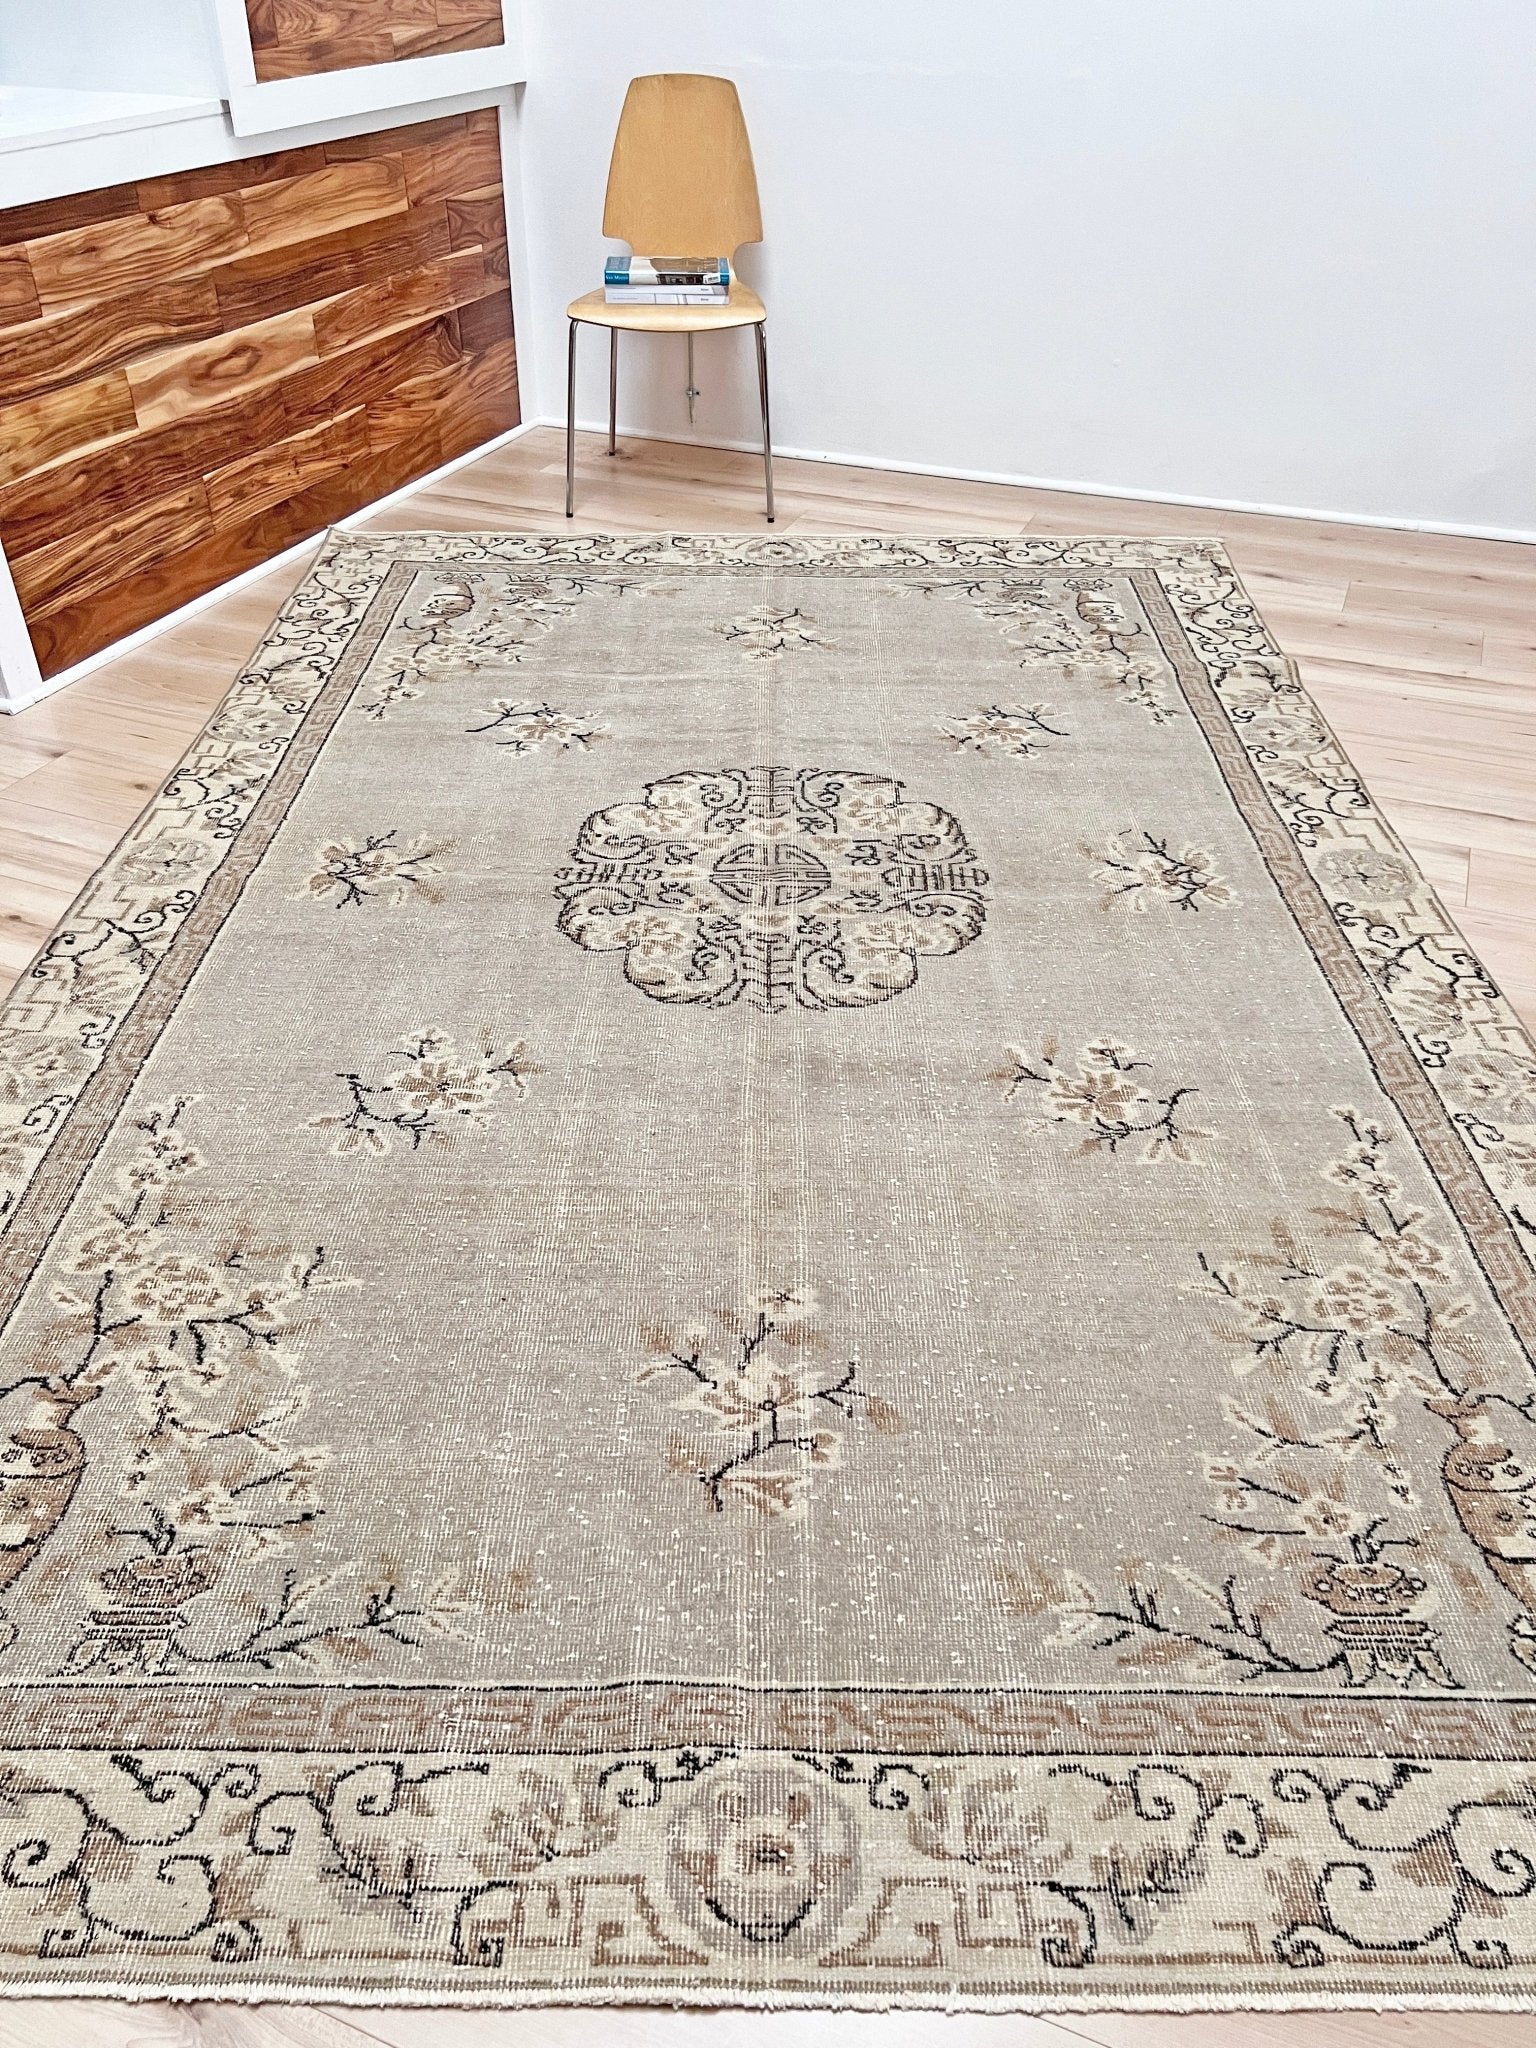 vintage muted Turkish rug shop san francisco bay area. Large distressed rug. Home decor shop. Buy handmade rug online